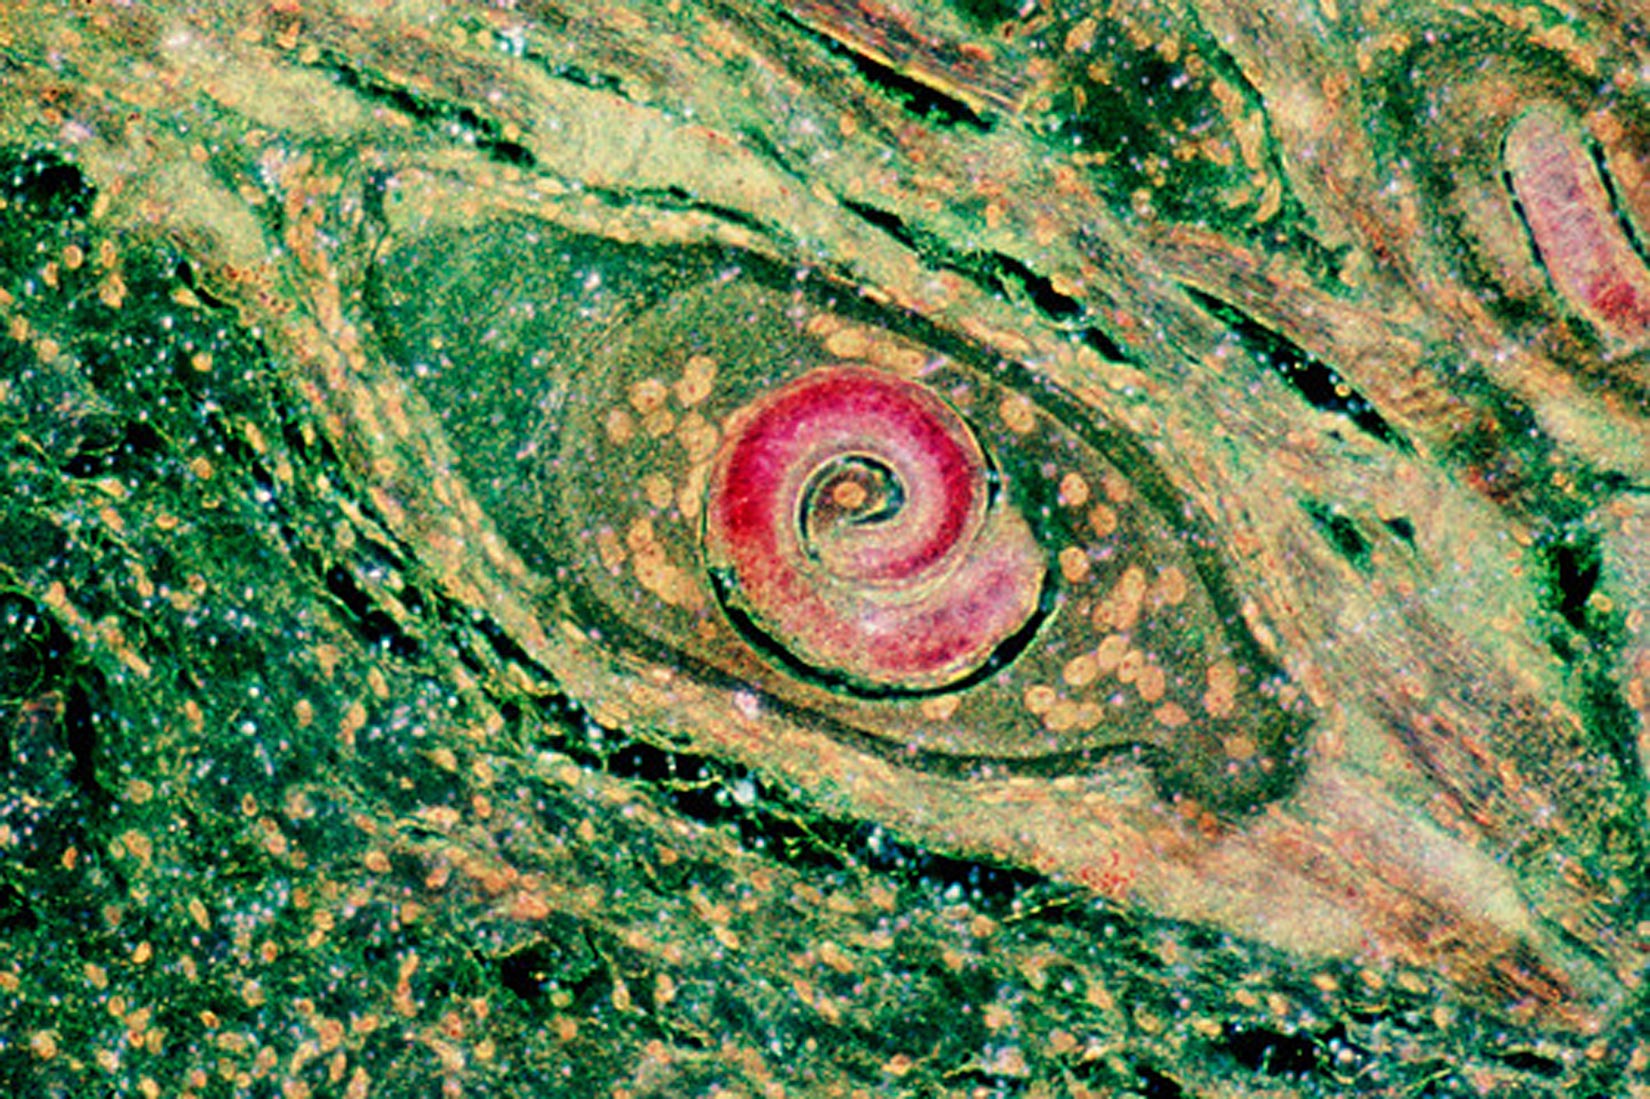 Slika prikazuje mikroskopsku fotografiju organizma koji podsjeća na sklupčanog ljubičastog crva.